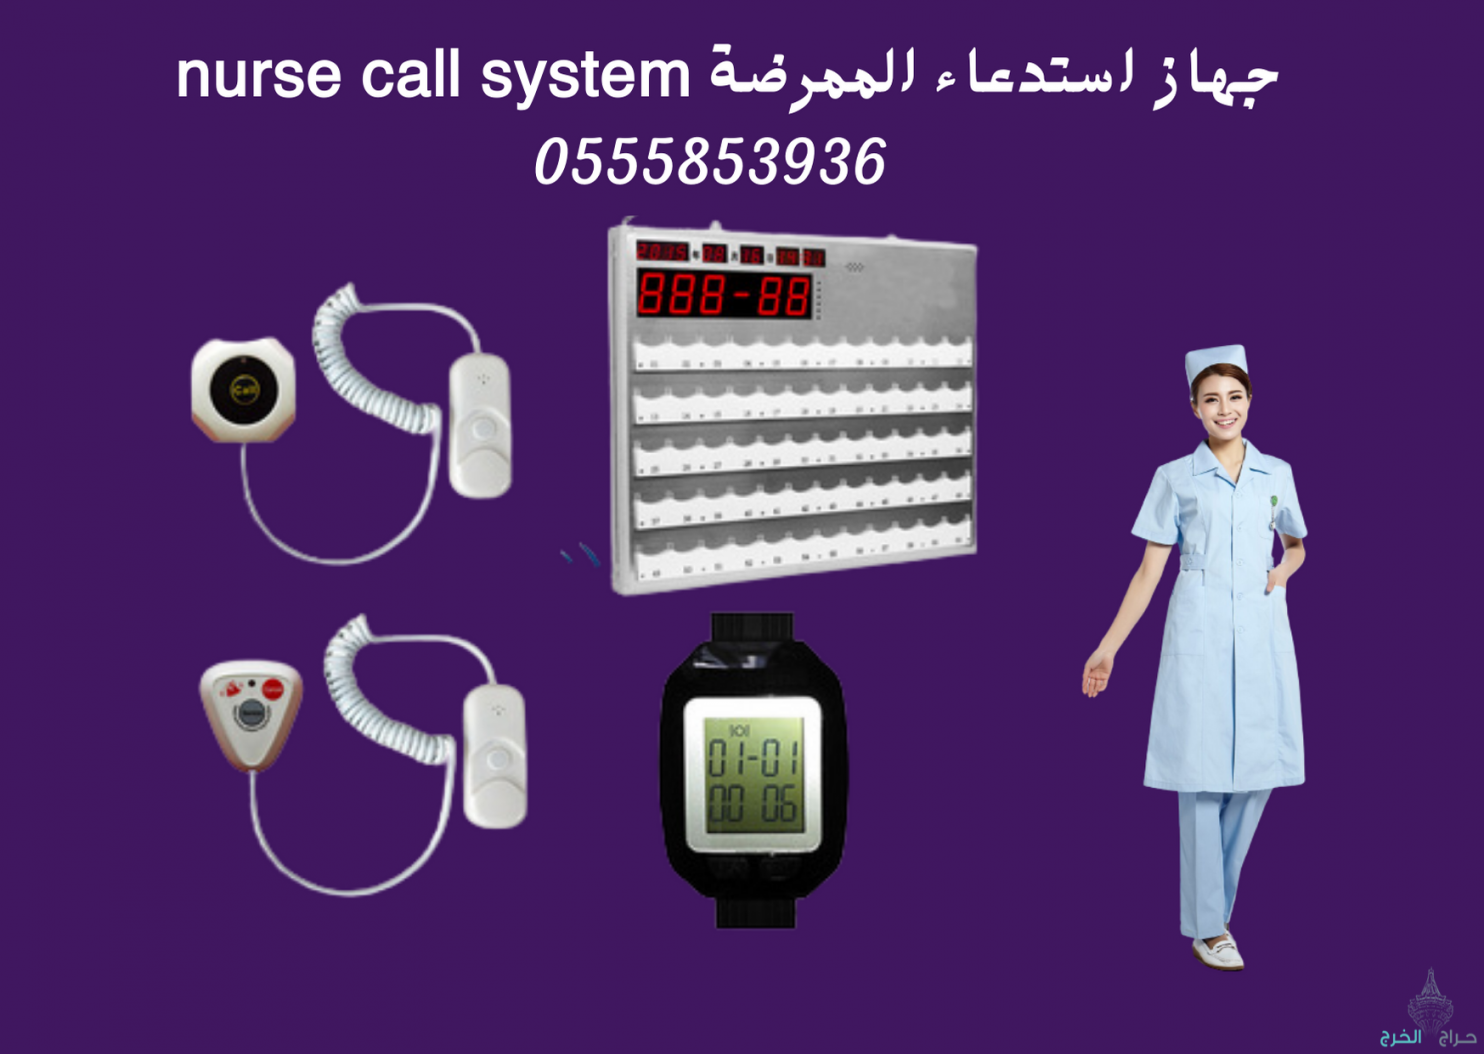 افضل اجهزة استدعاء التمريض nurse call system